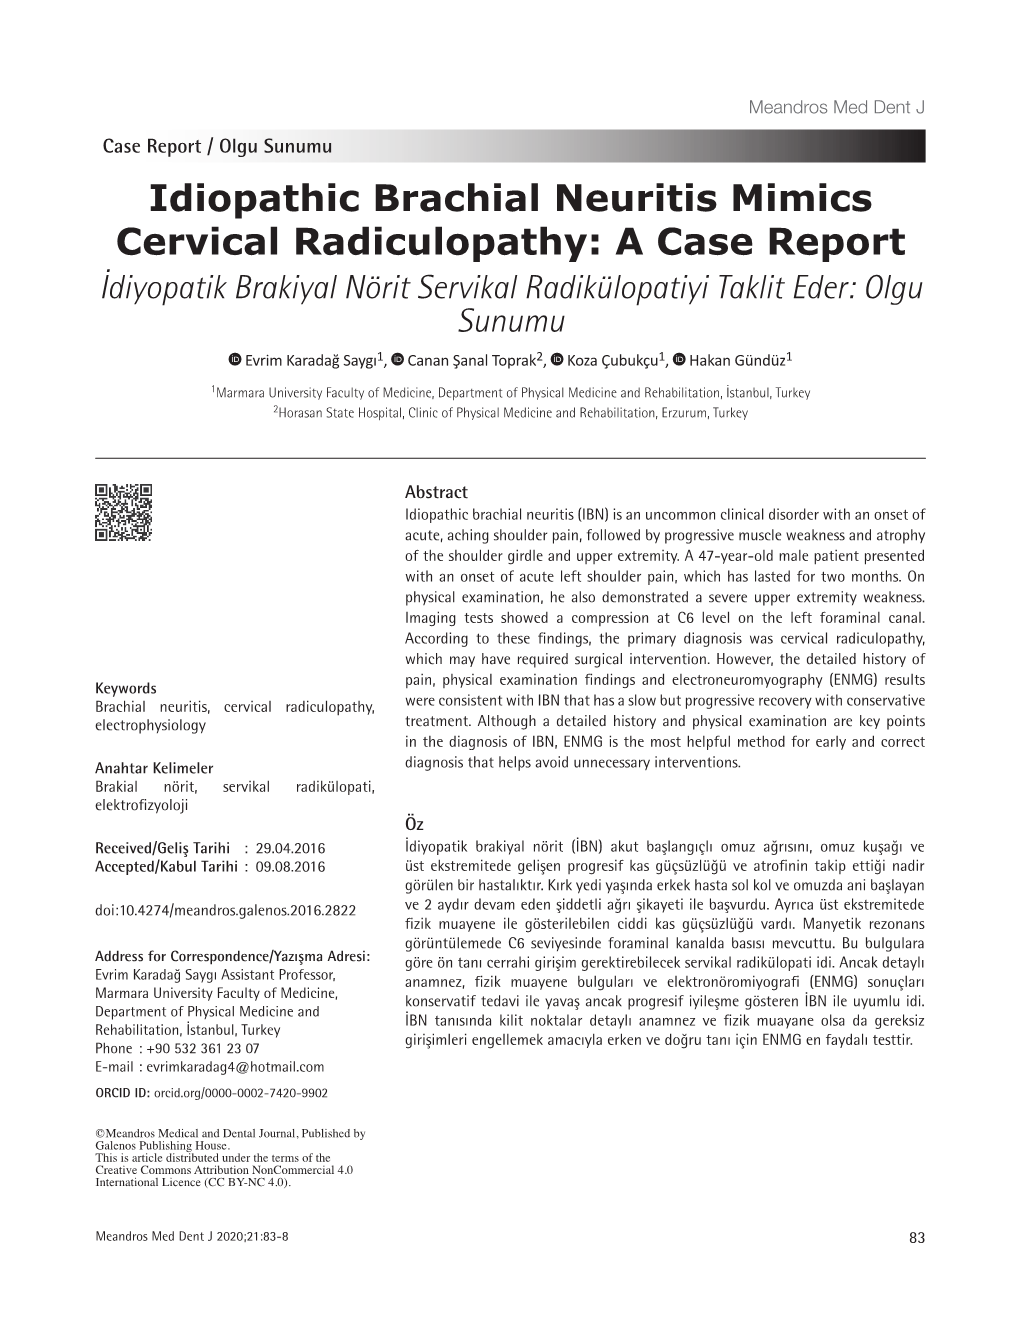 Idiopathic Brachial Neuritis Mimics Cervical Radiculopathy: a Case Report